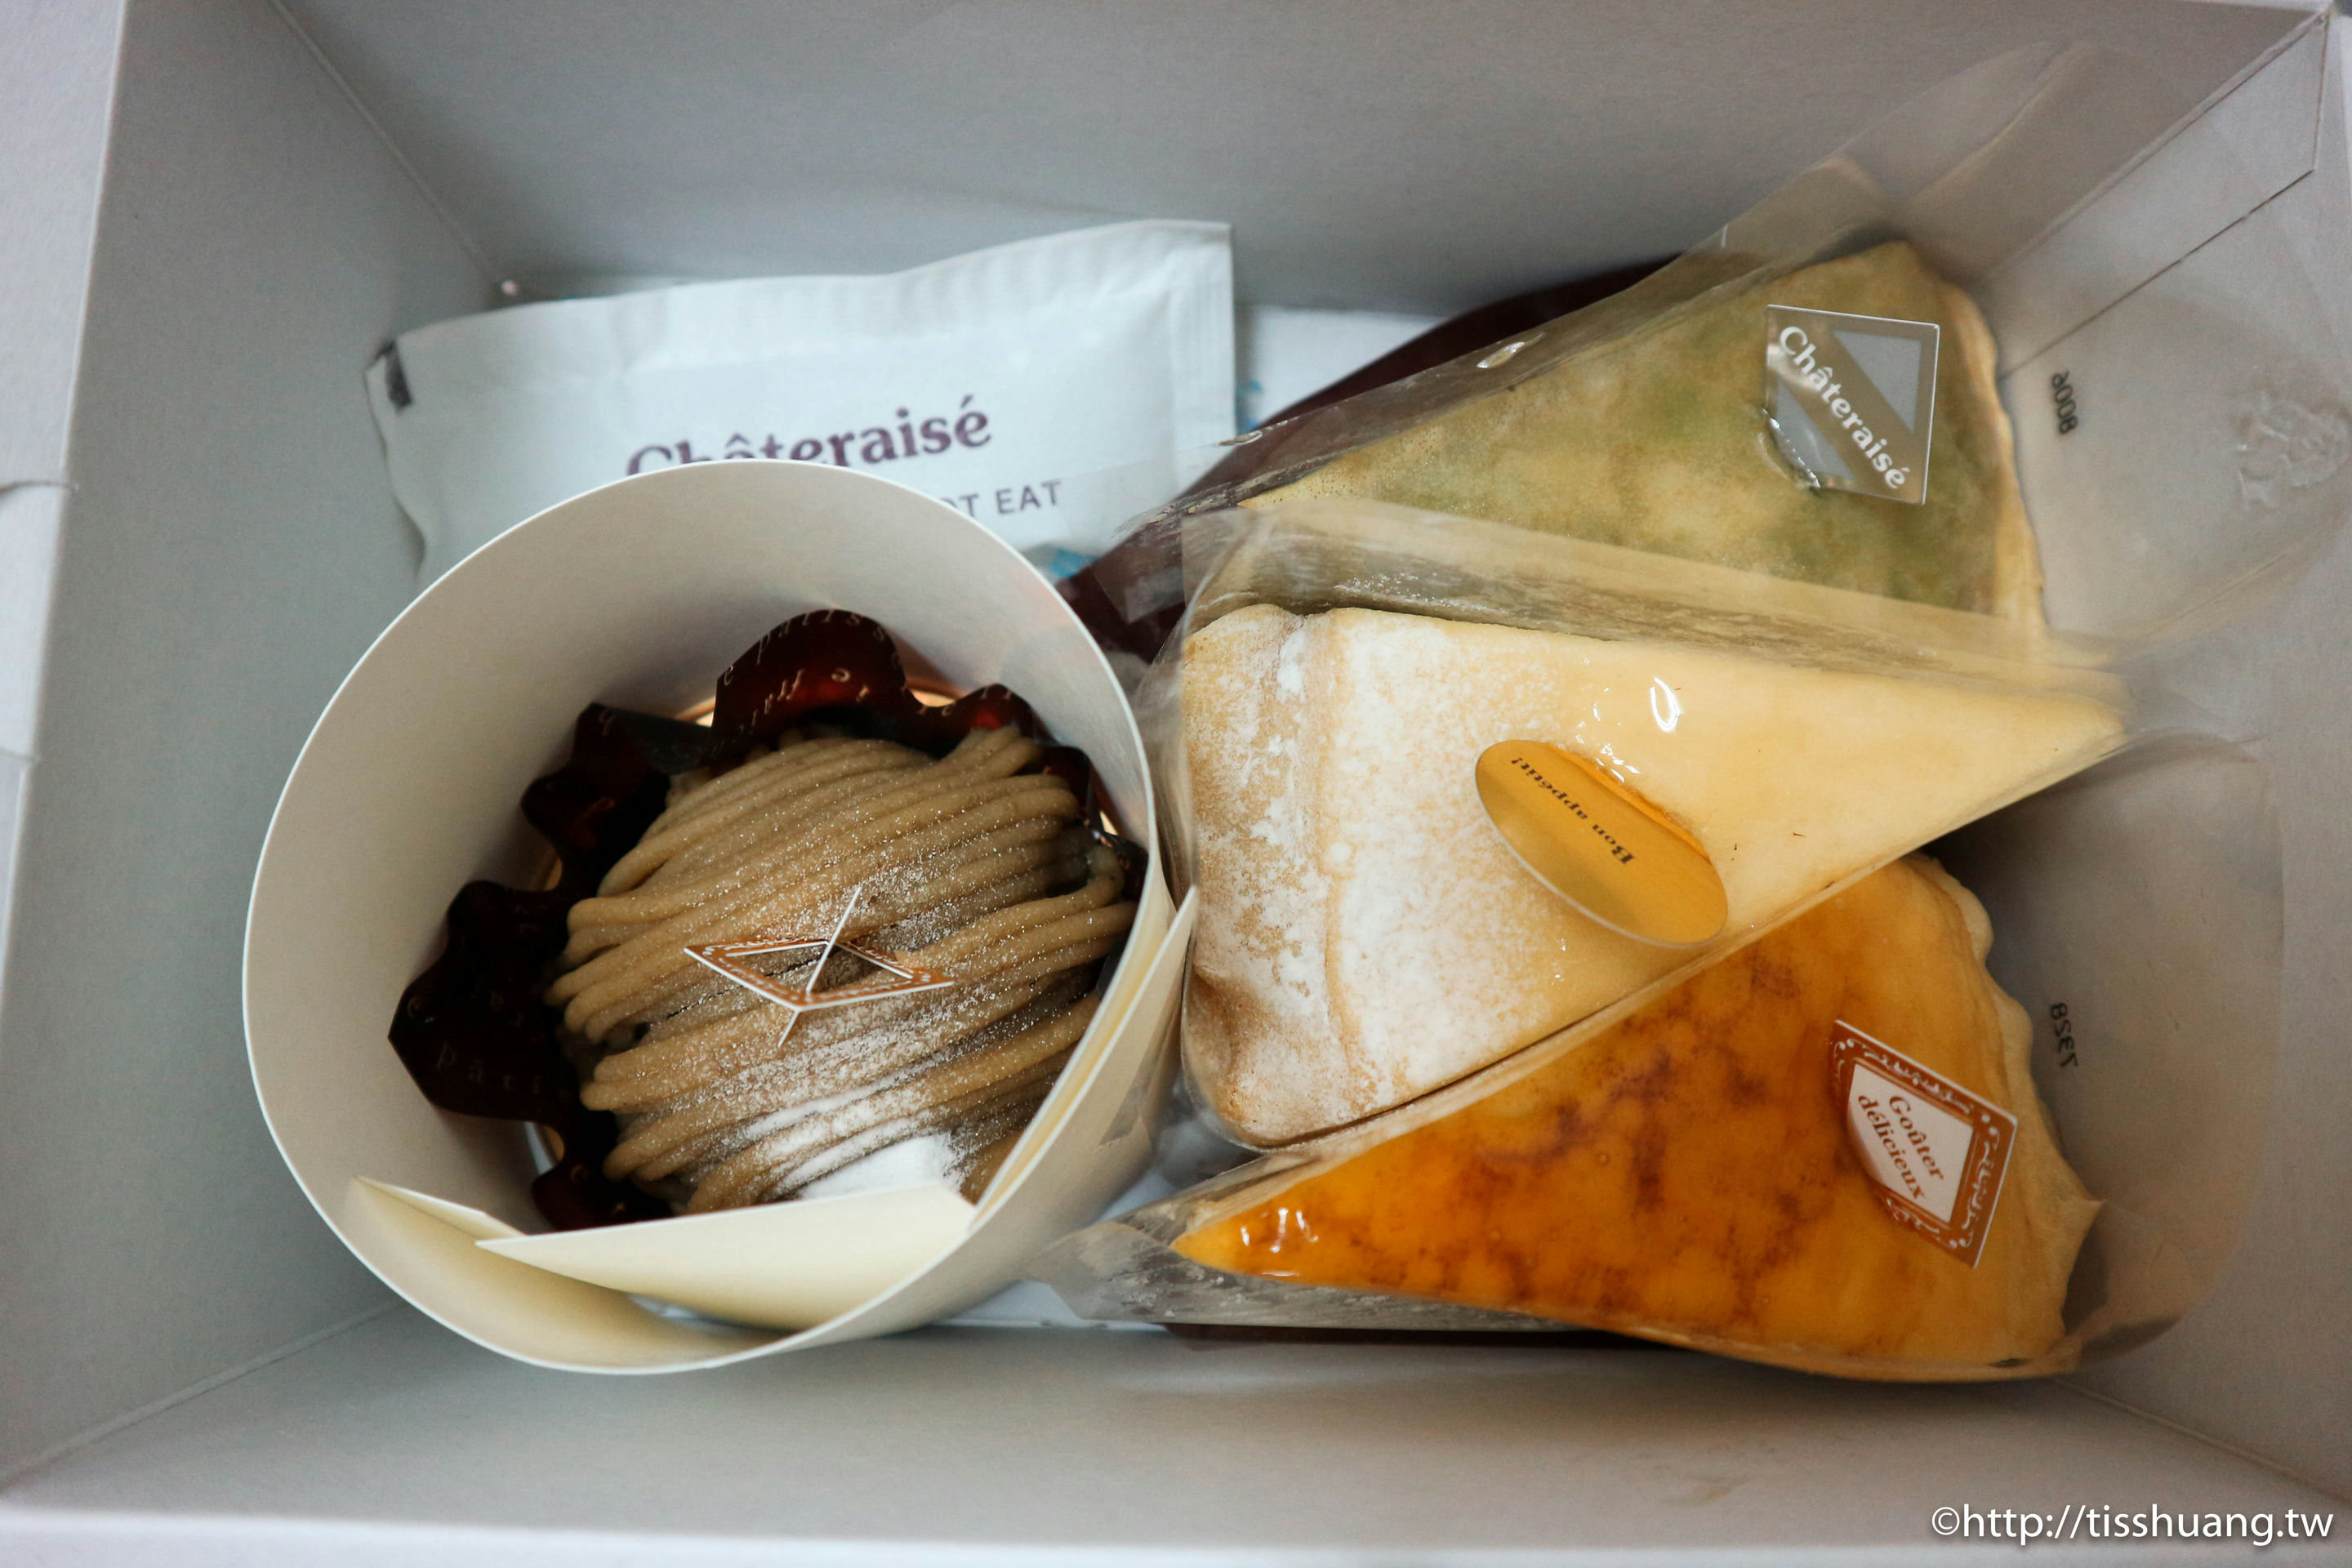 日本直送,法式甜點,Chateraise沙得徠茲,微風南京 @TISS玩味食尚